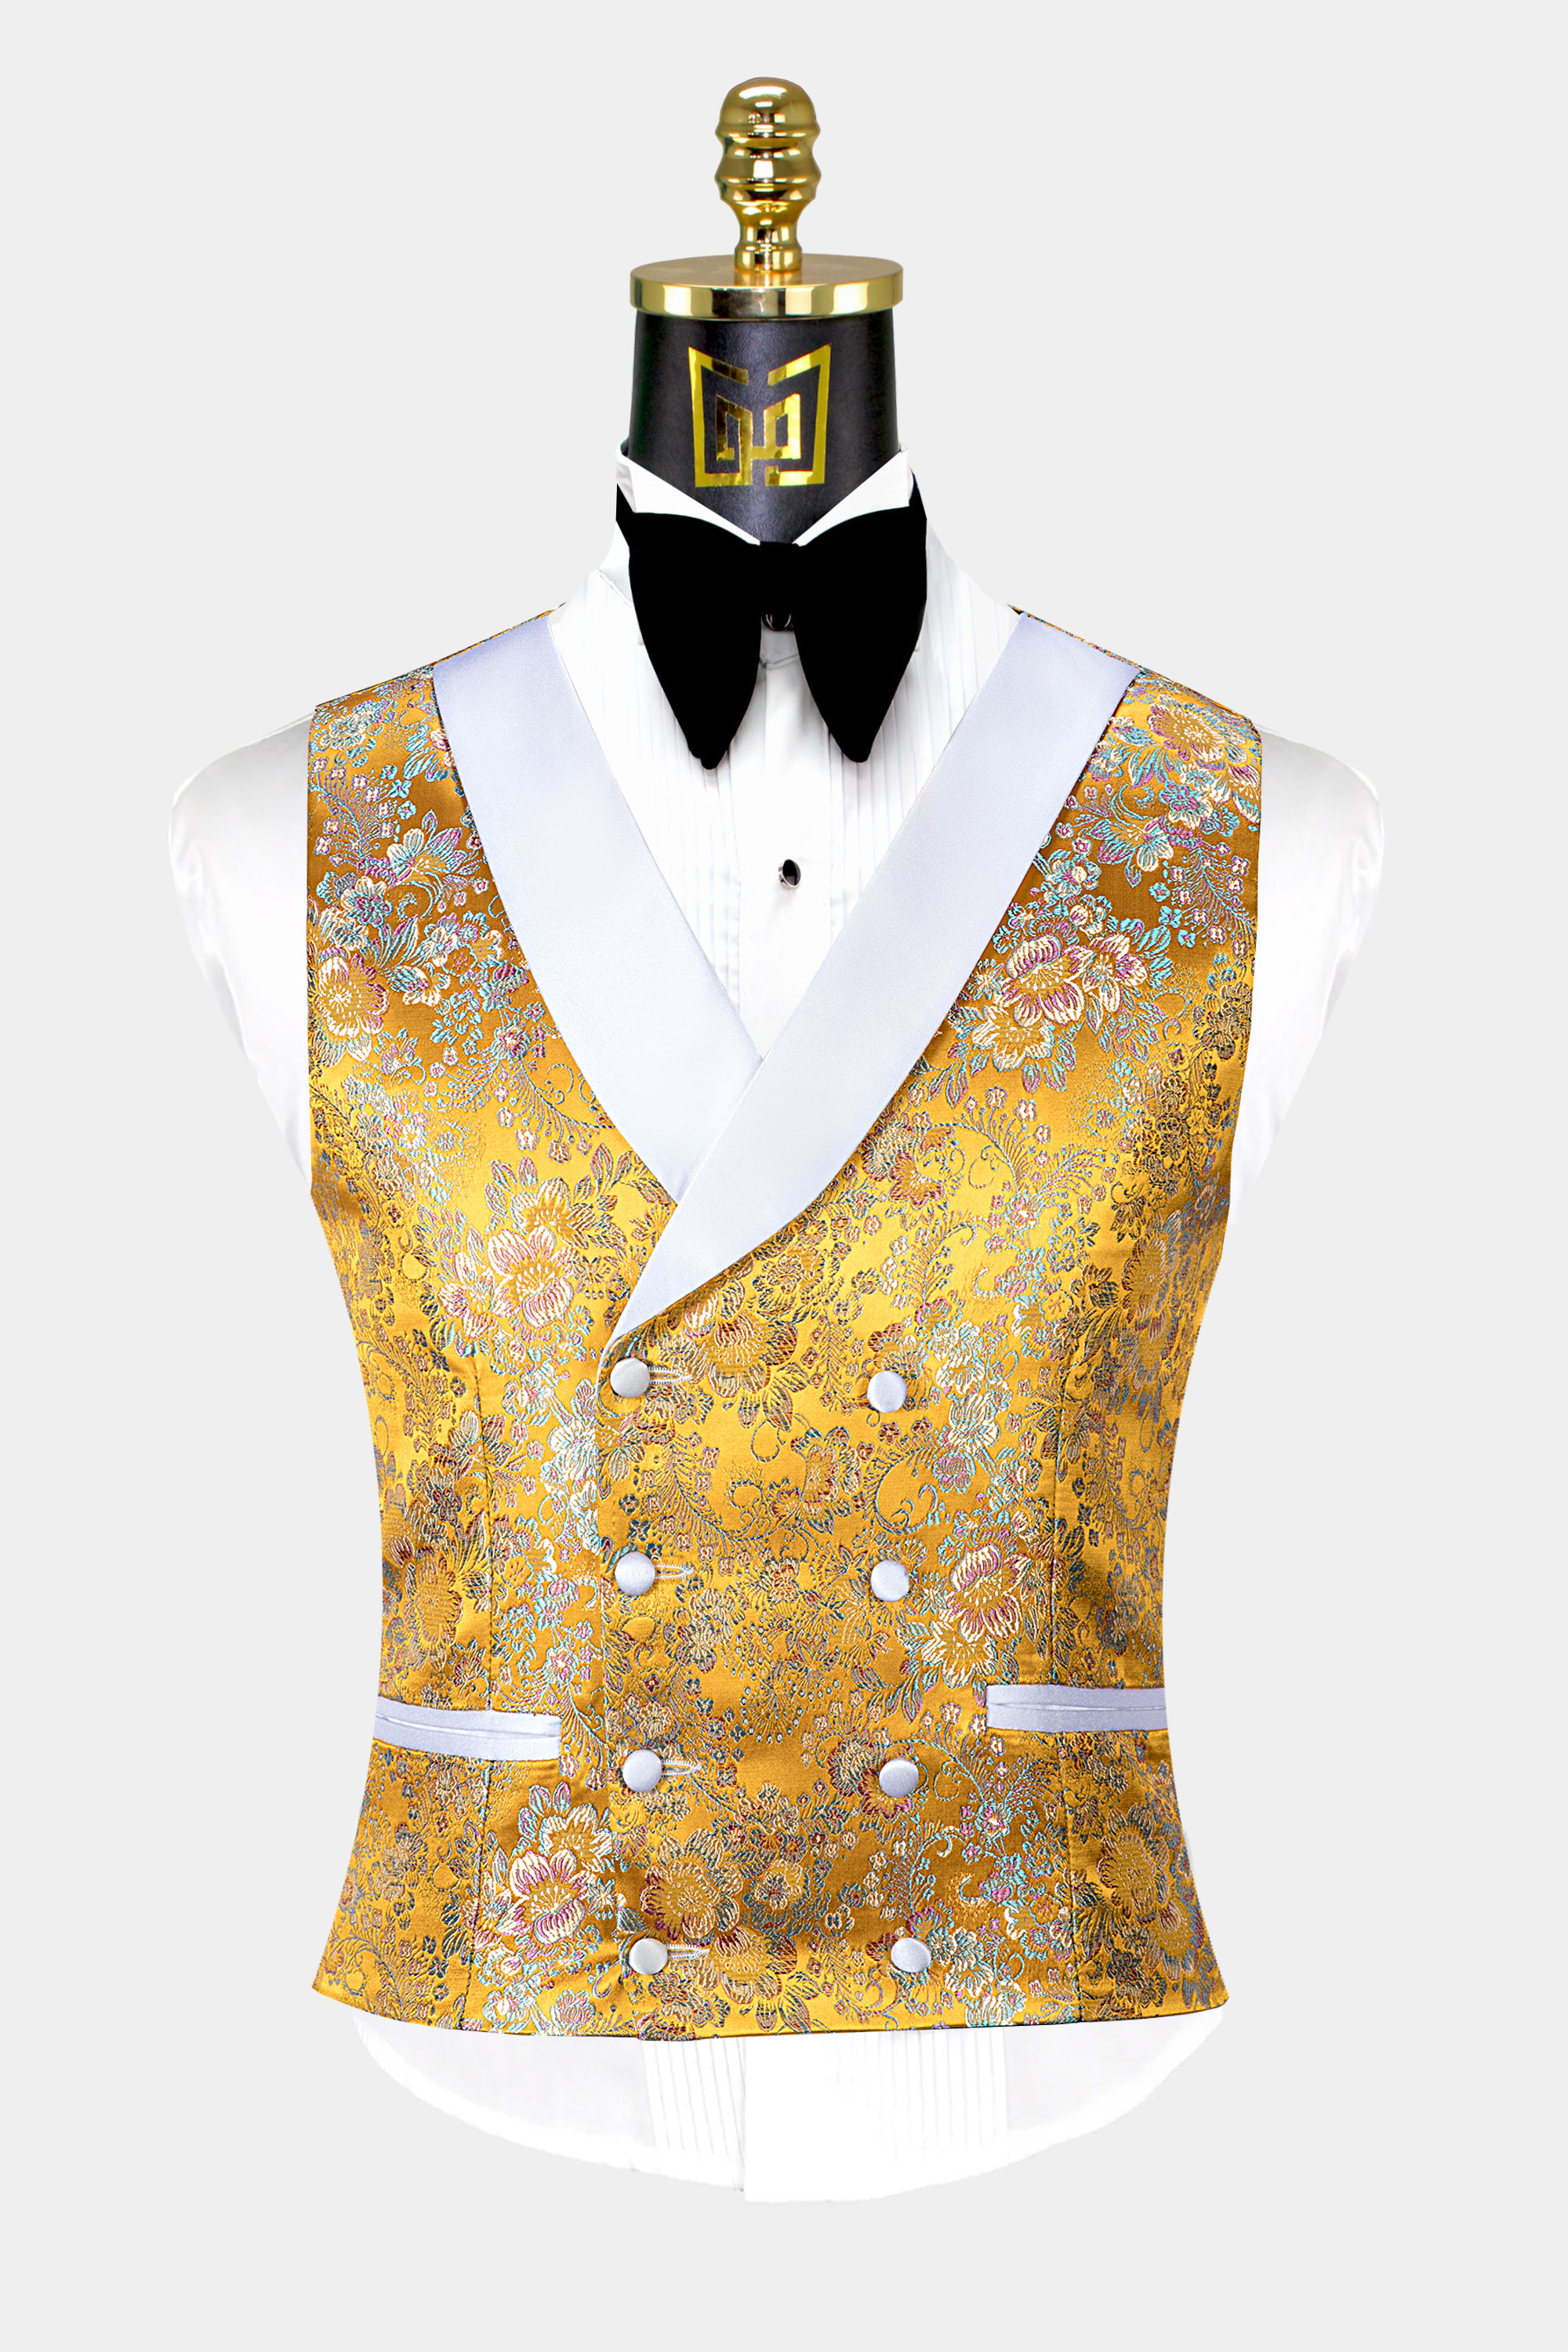 Yellow-and-White-Tuxedo-Vest-from-Gentlemansguru.com